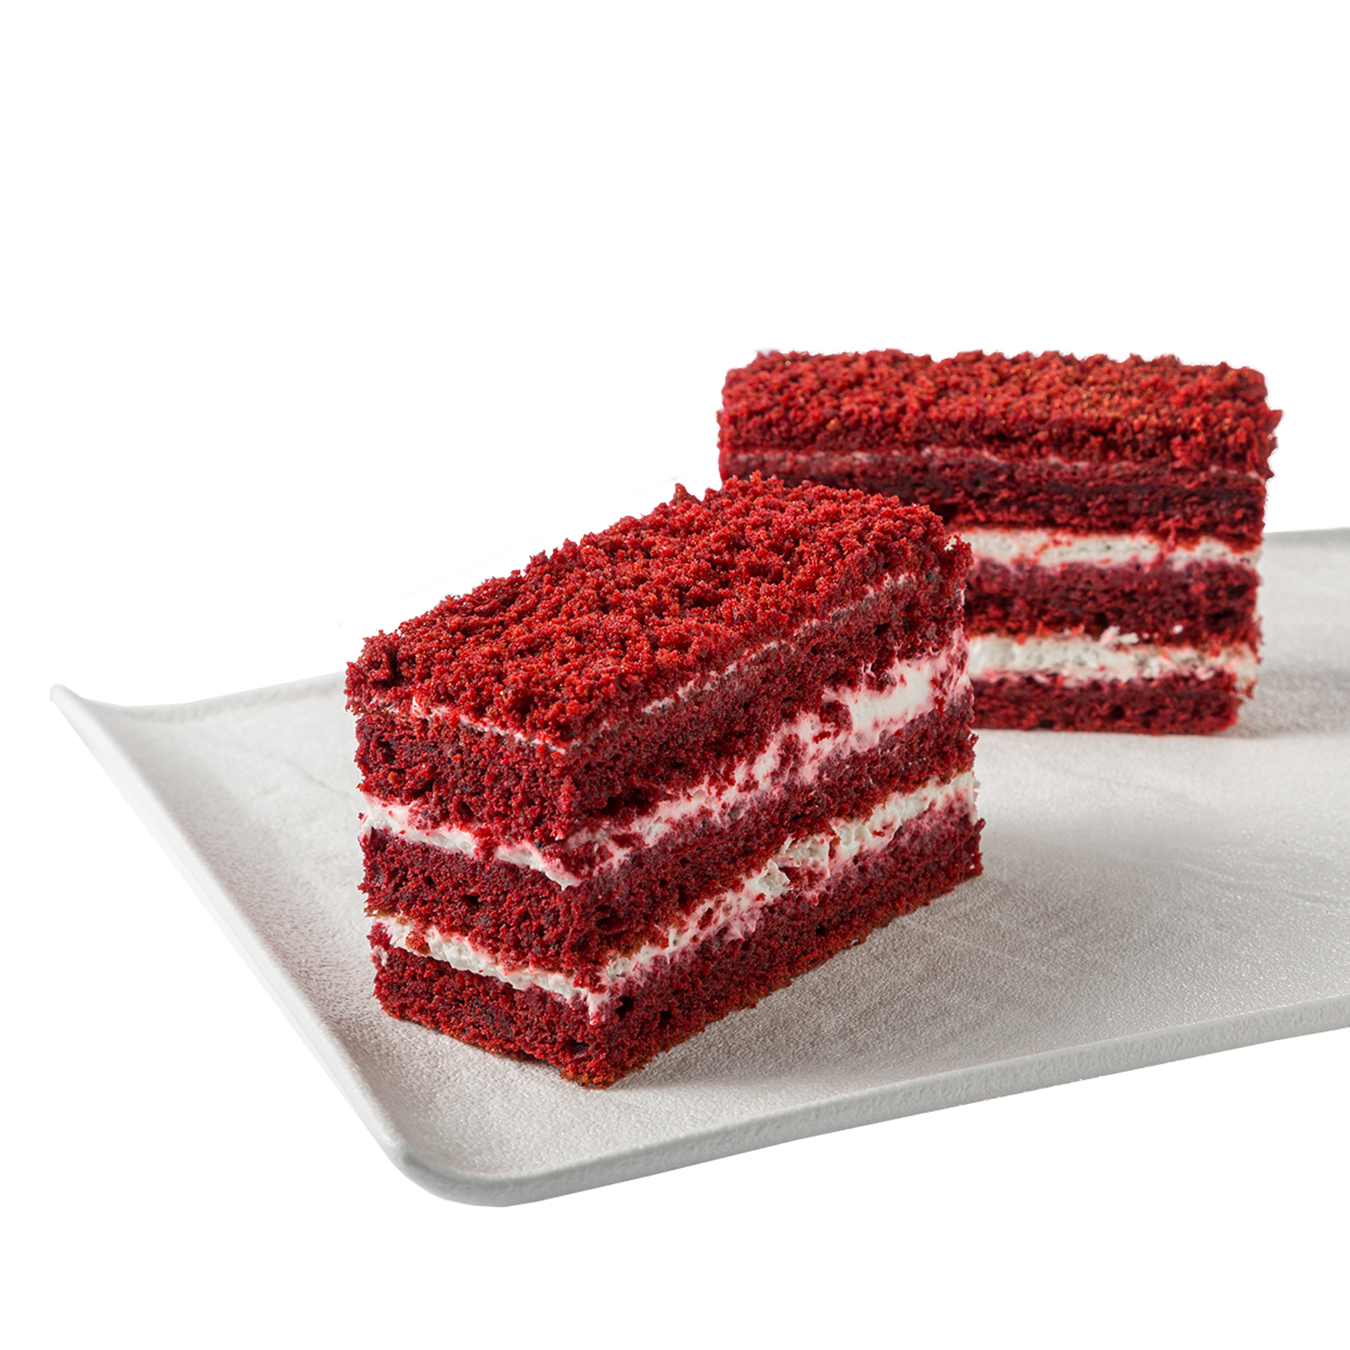 Red velvet cake 1psc 130g